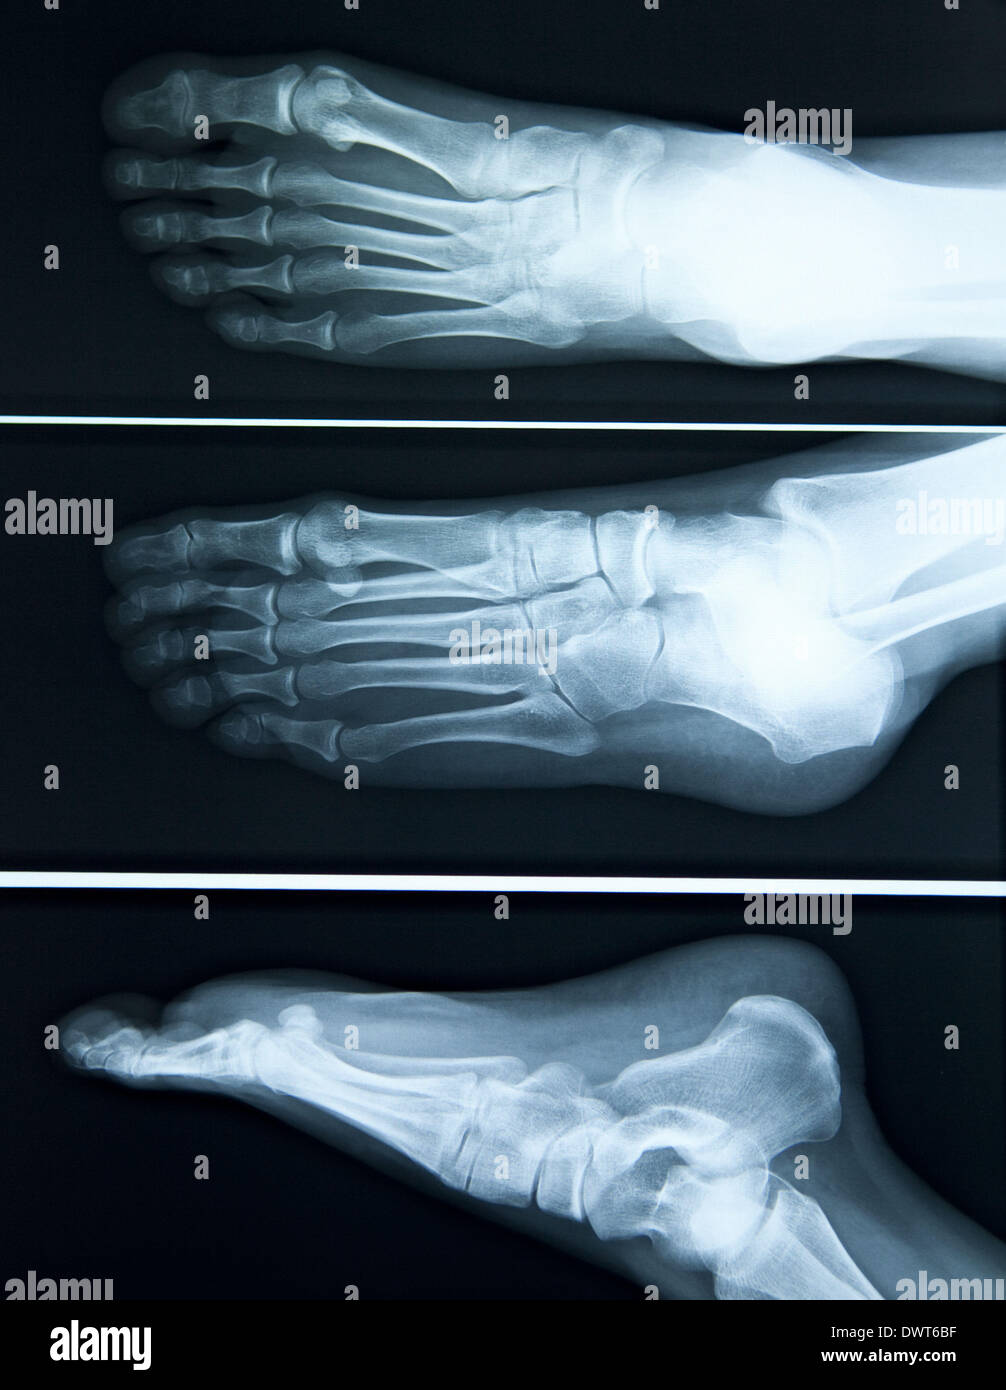 Flat foot x ray Stock Photo